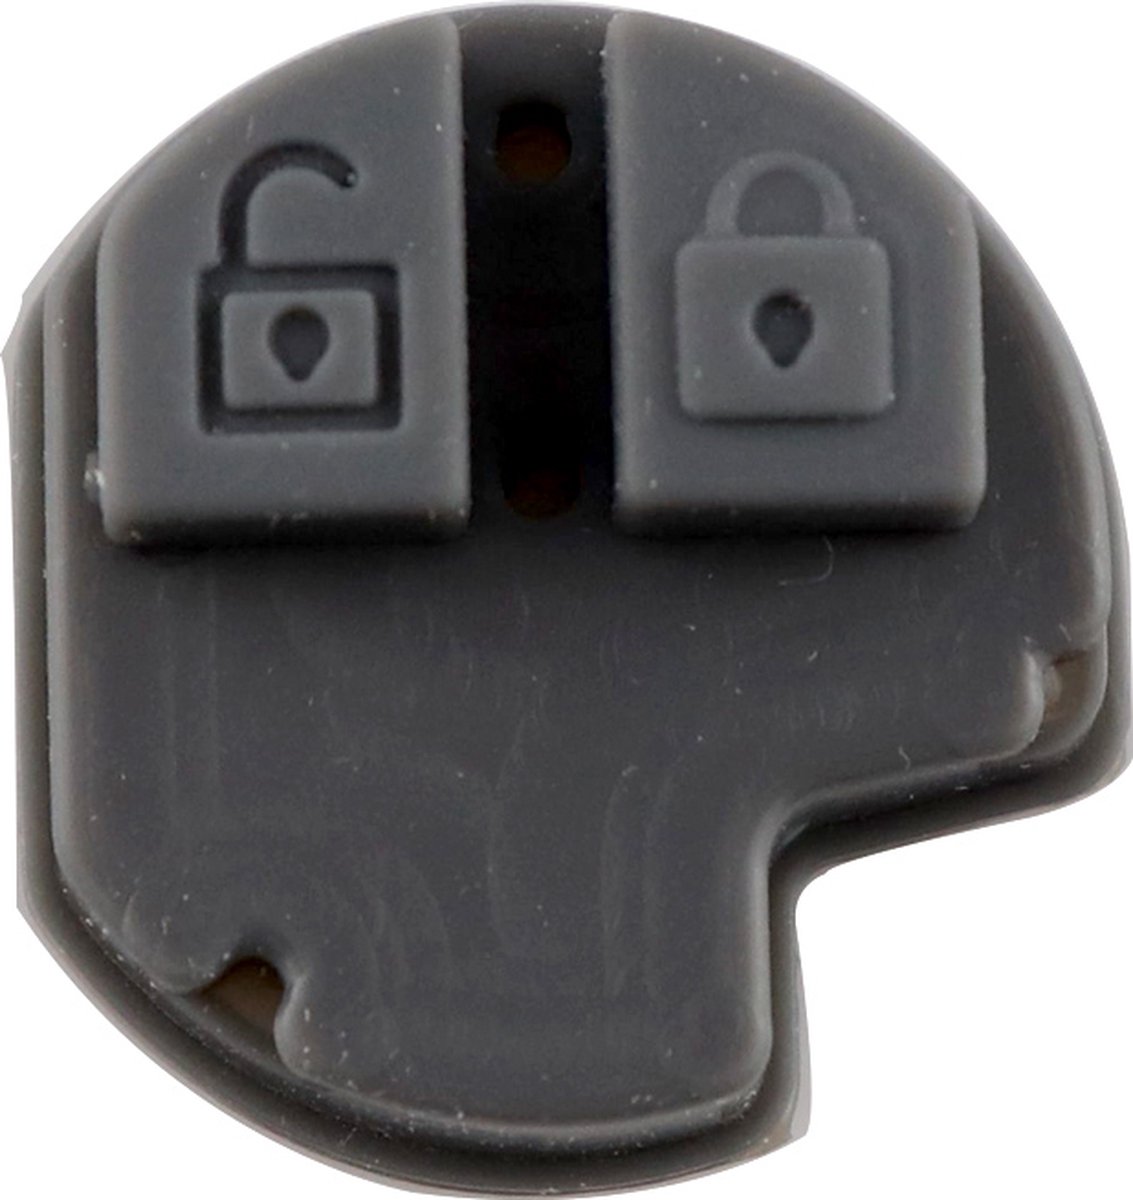 XEOD Drukknoppen Autosleutelbehuizing - sleutelbehuizing auto - sleutel - Druk Knop - Autosleutel Geschikt voor: Opel / Suzuki 2 knops